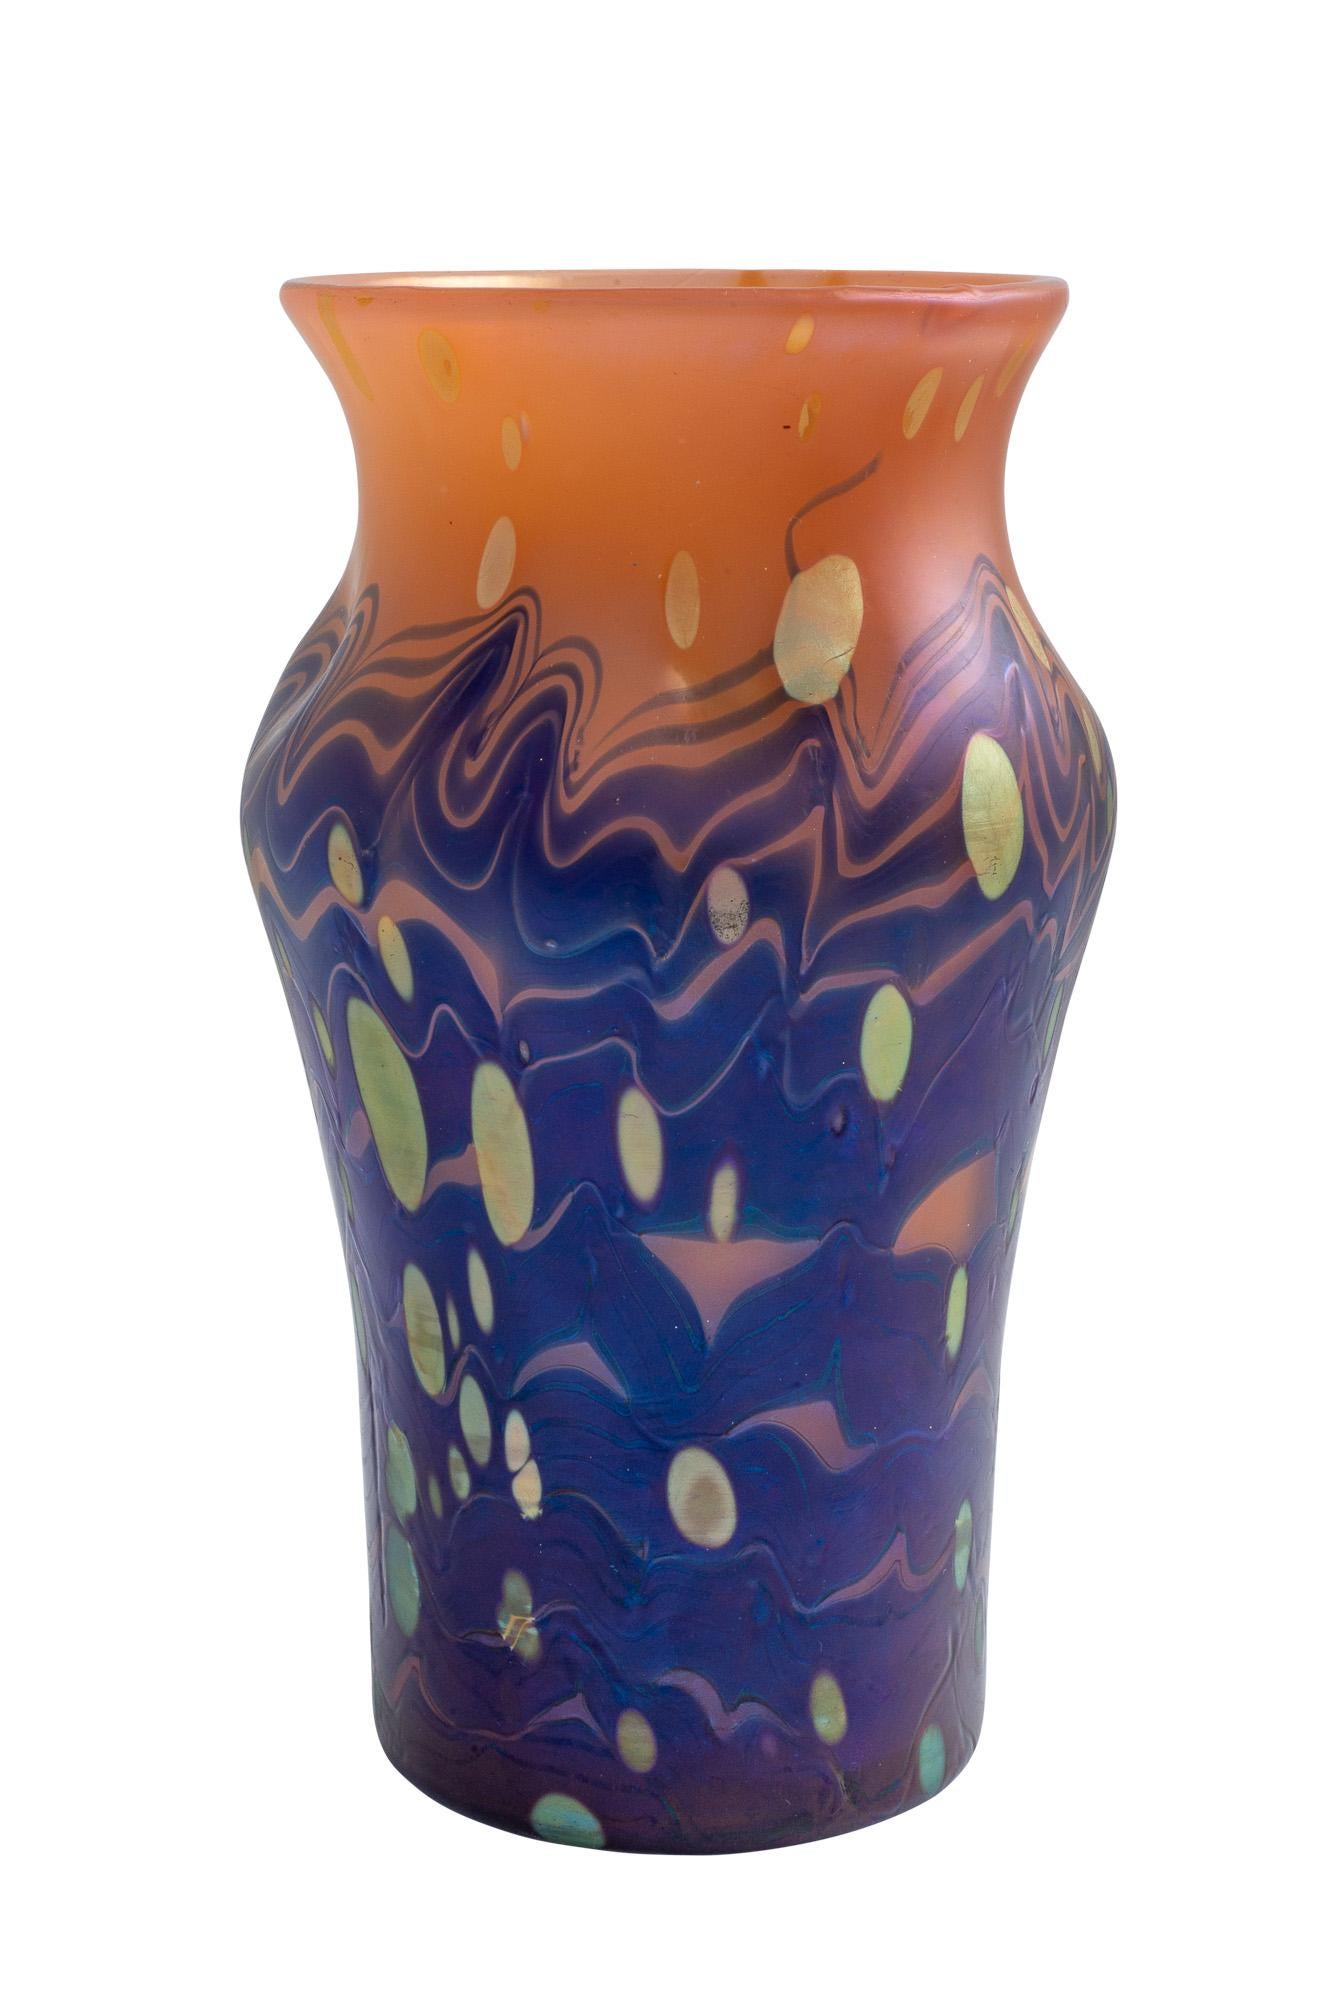 Austrian Jugendstil glass vase Johann Loetz Witwe blue orange gold circa 1901 